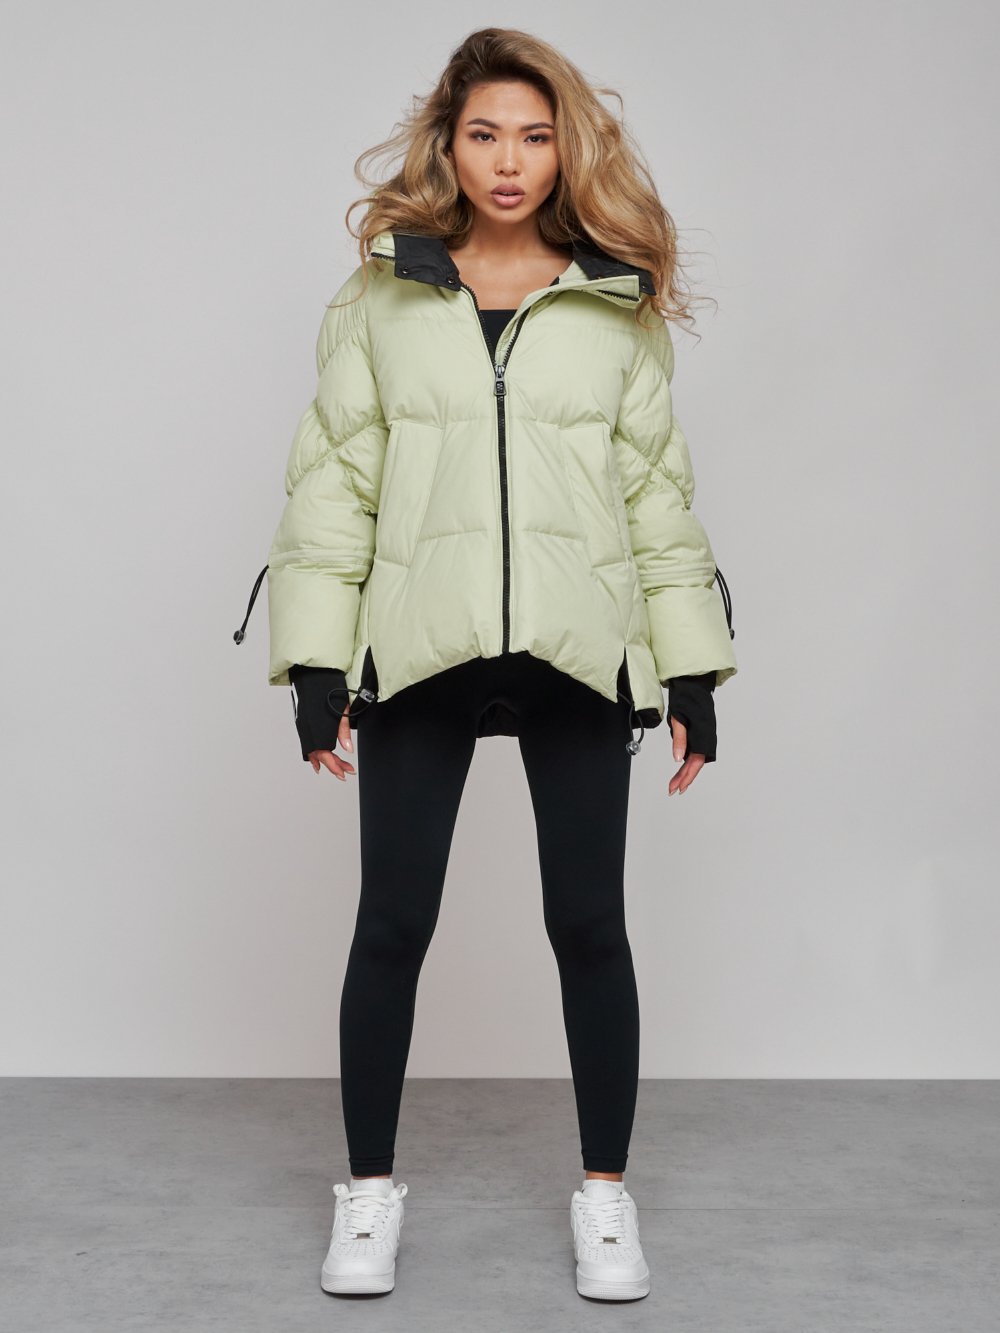 Купить куртку зимнюю оптом от производителя недорого в Москве 52306Sl 1